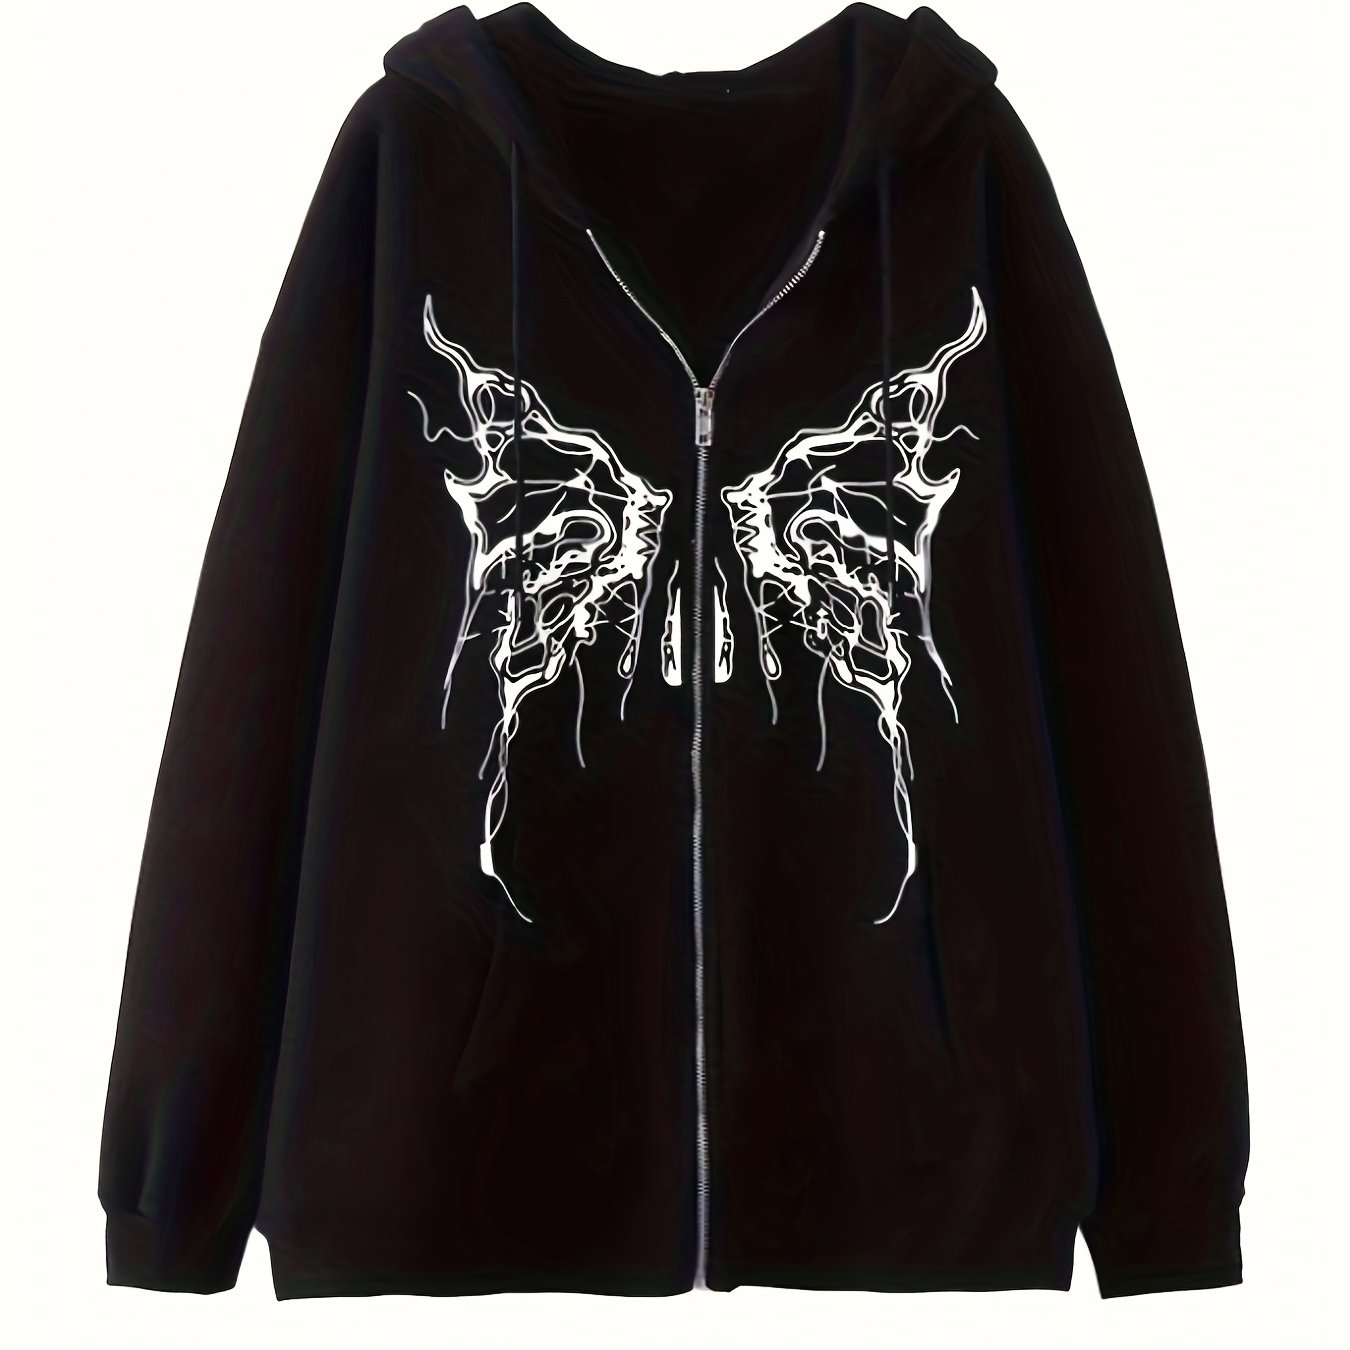 Grunge Butterfly Print Kangaroo Pocket Hoodie, Casual Long Sleeve Drawstring Hoodies Sweatshirt, Women's Clothing